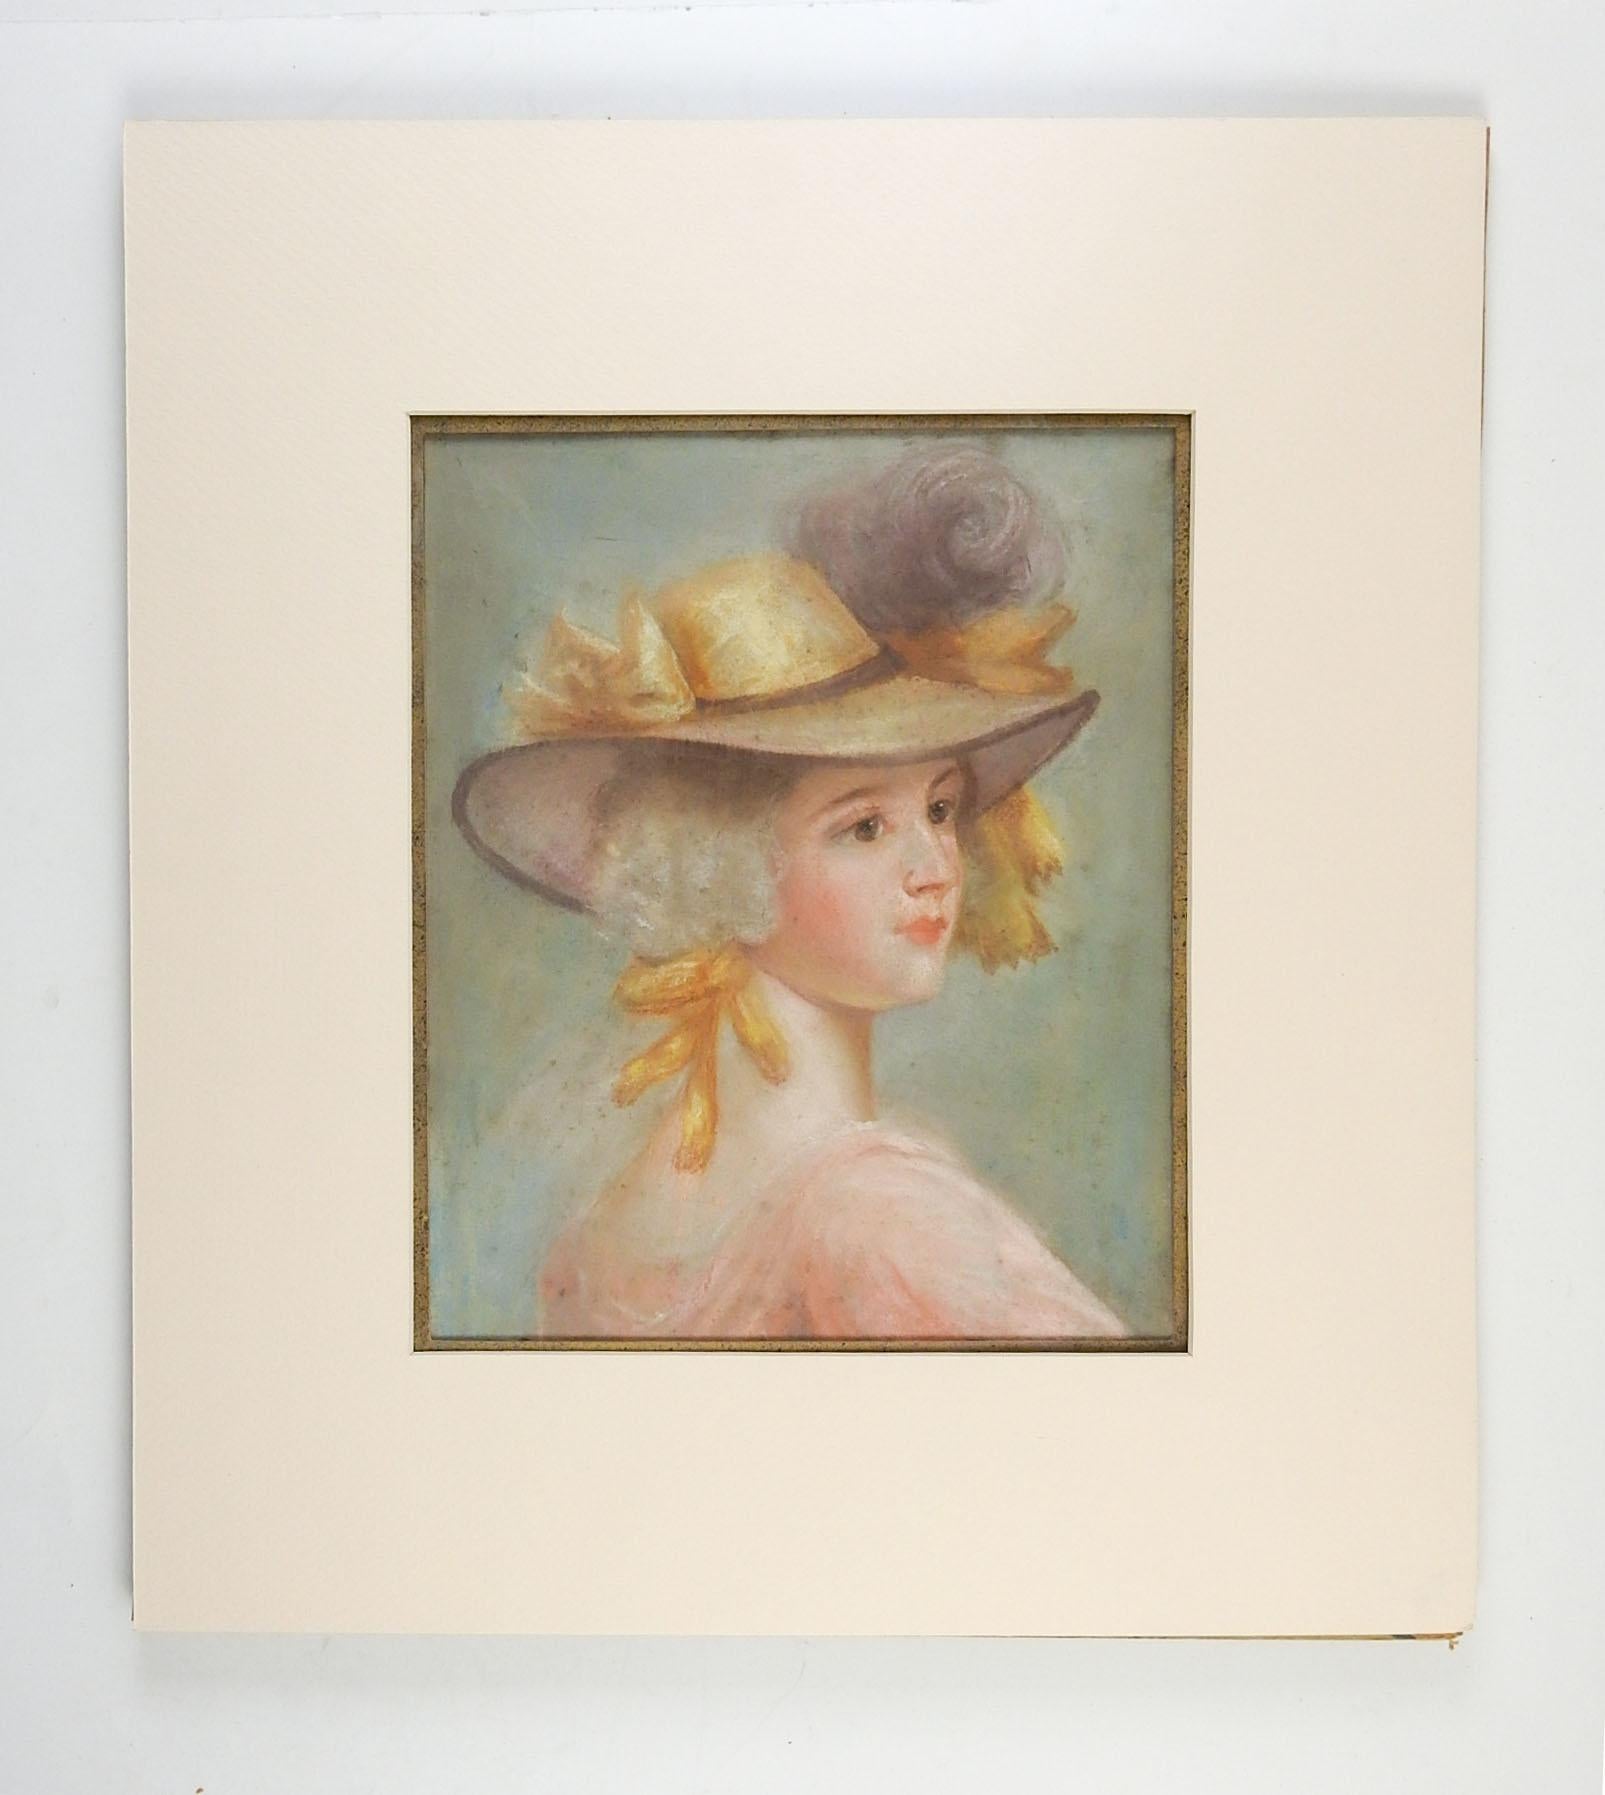 Portrait au pastel sur papier d'une femme portant une robe rose pâle de l'époque géorgienne et un bonnet avec des rubans jaunes. Non signé, vers les années 1930. Non encadré, exposé monté sur carton sous passe-partout, taille d'ouverture 9L x 12H.